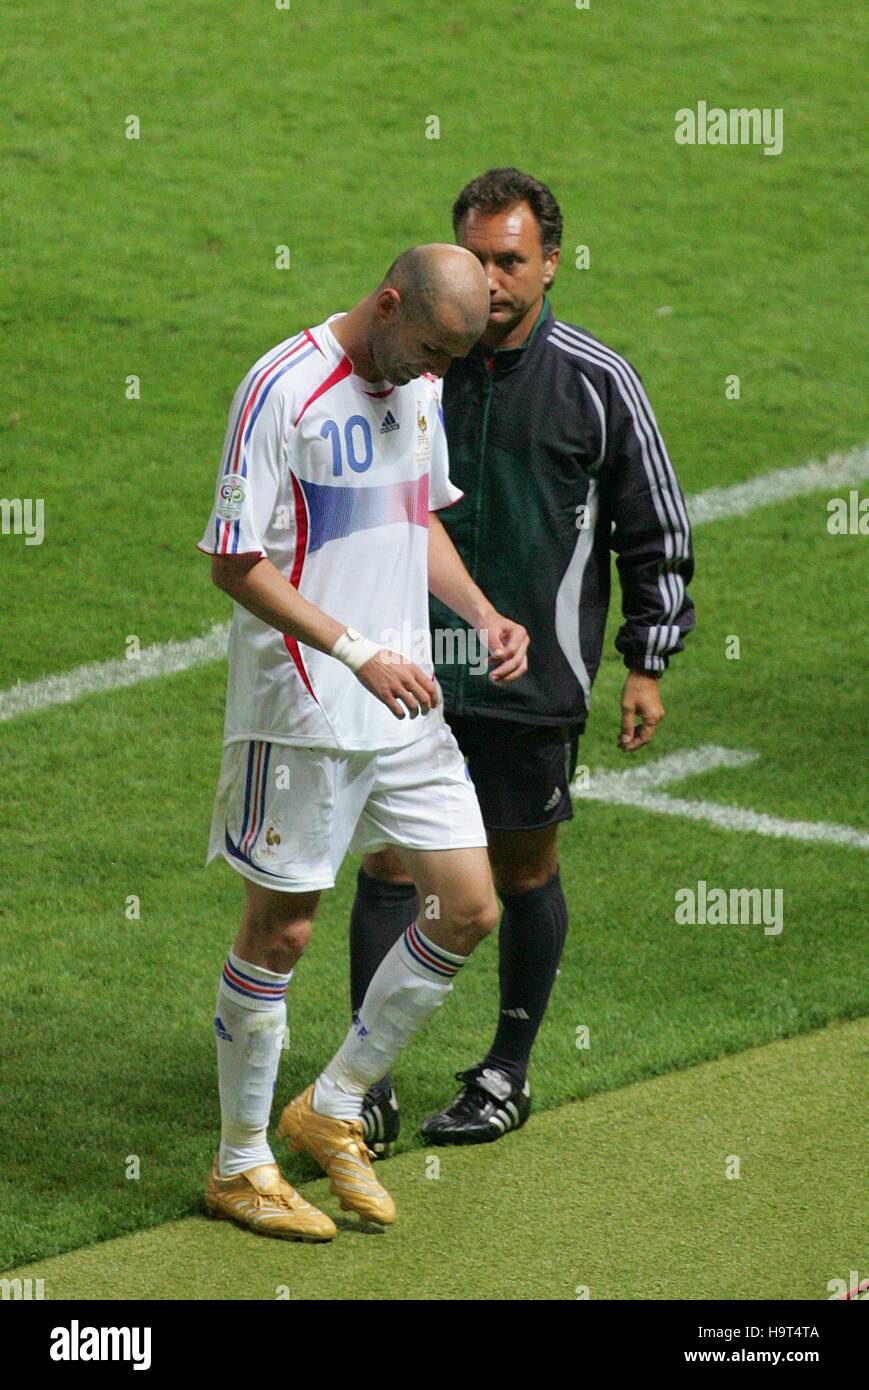 09/07/2006 - Itália 1 x 1 França - Três Pontos